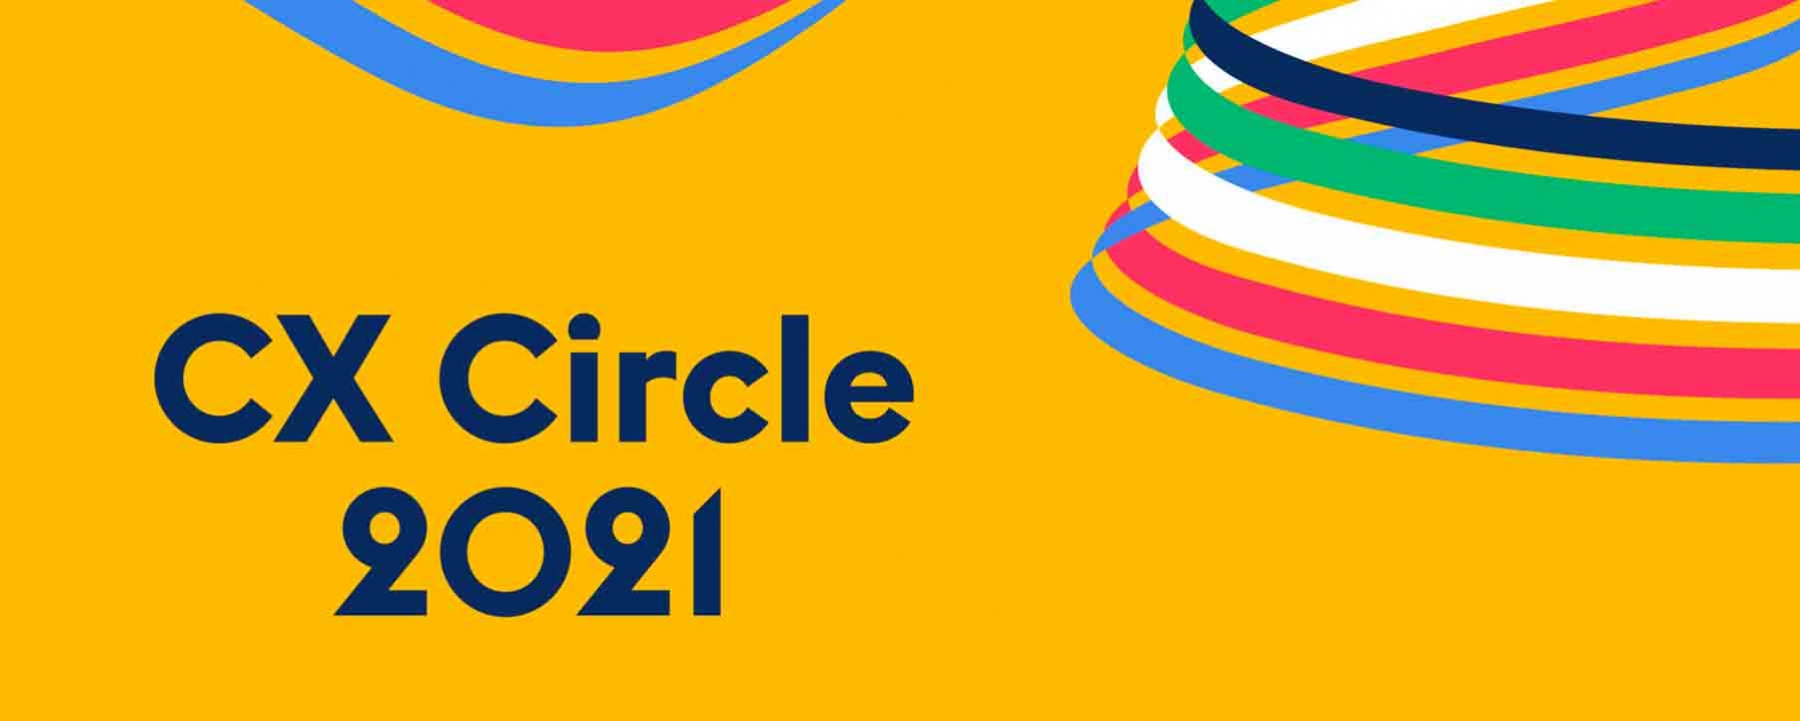 CX Circle 2021